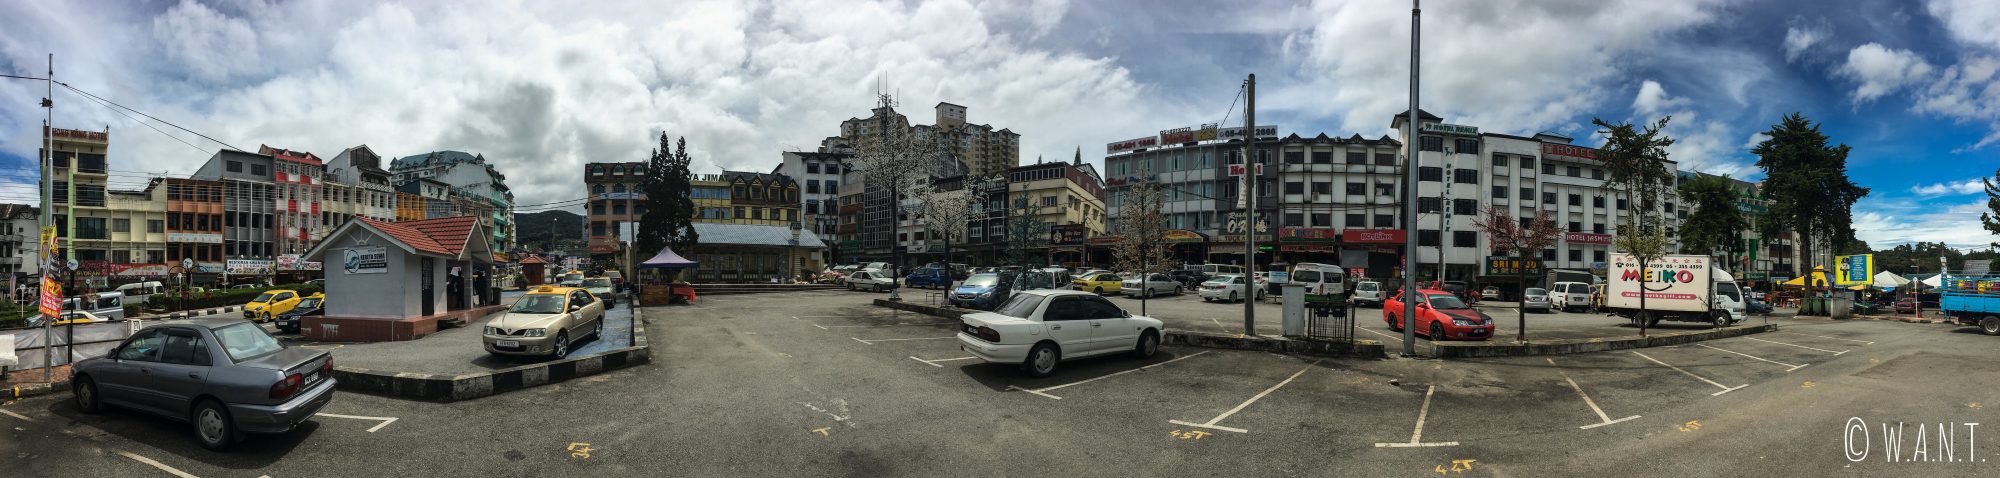 Panorama sur la place centrale de Brinchang qui n'est autre qu'un parking